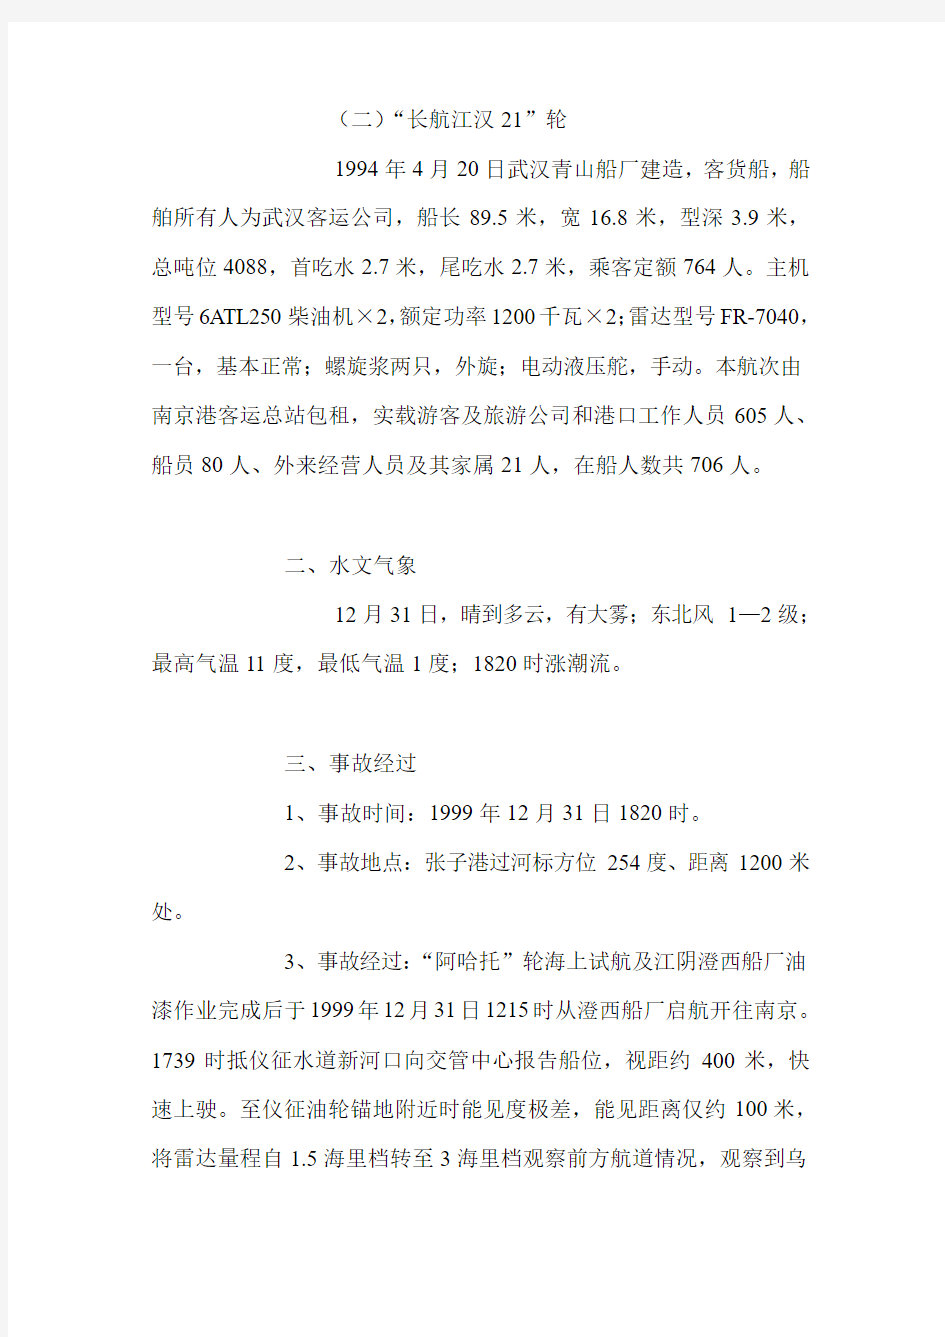 “阿哈托”轮与“长航江汉21”轮碰撞事故调查报告